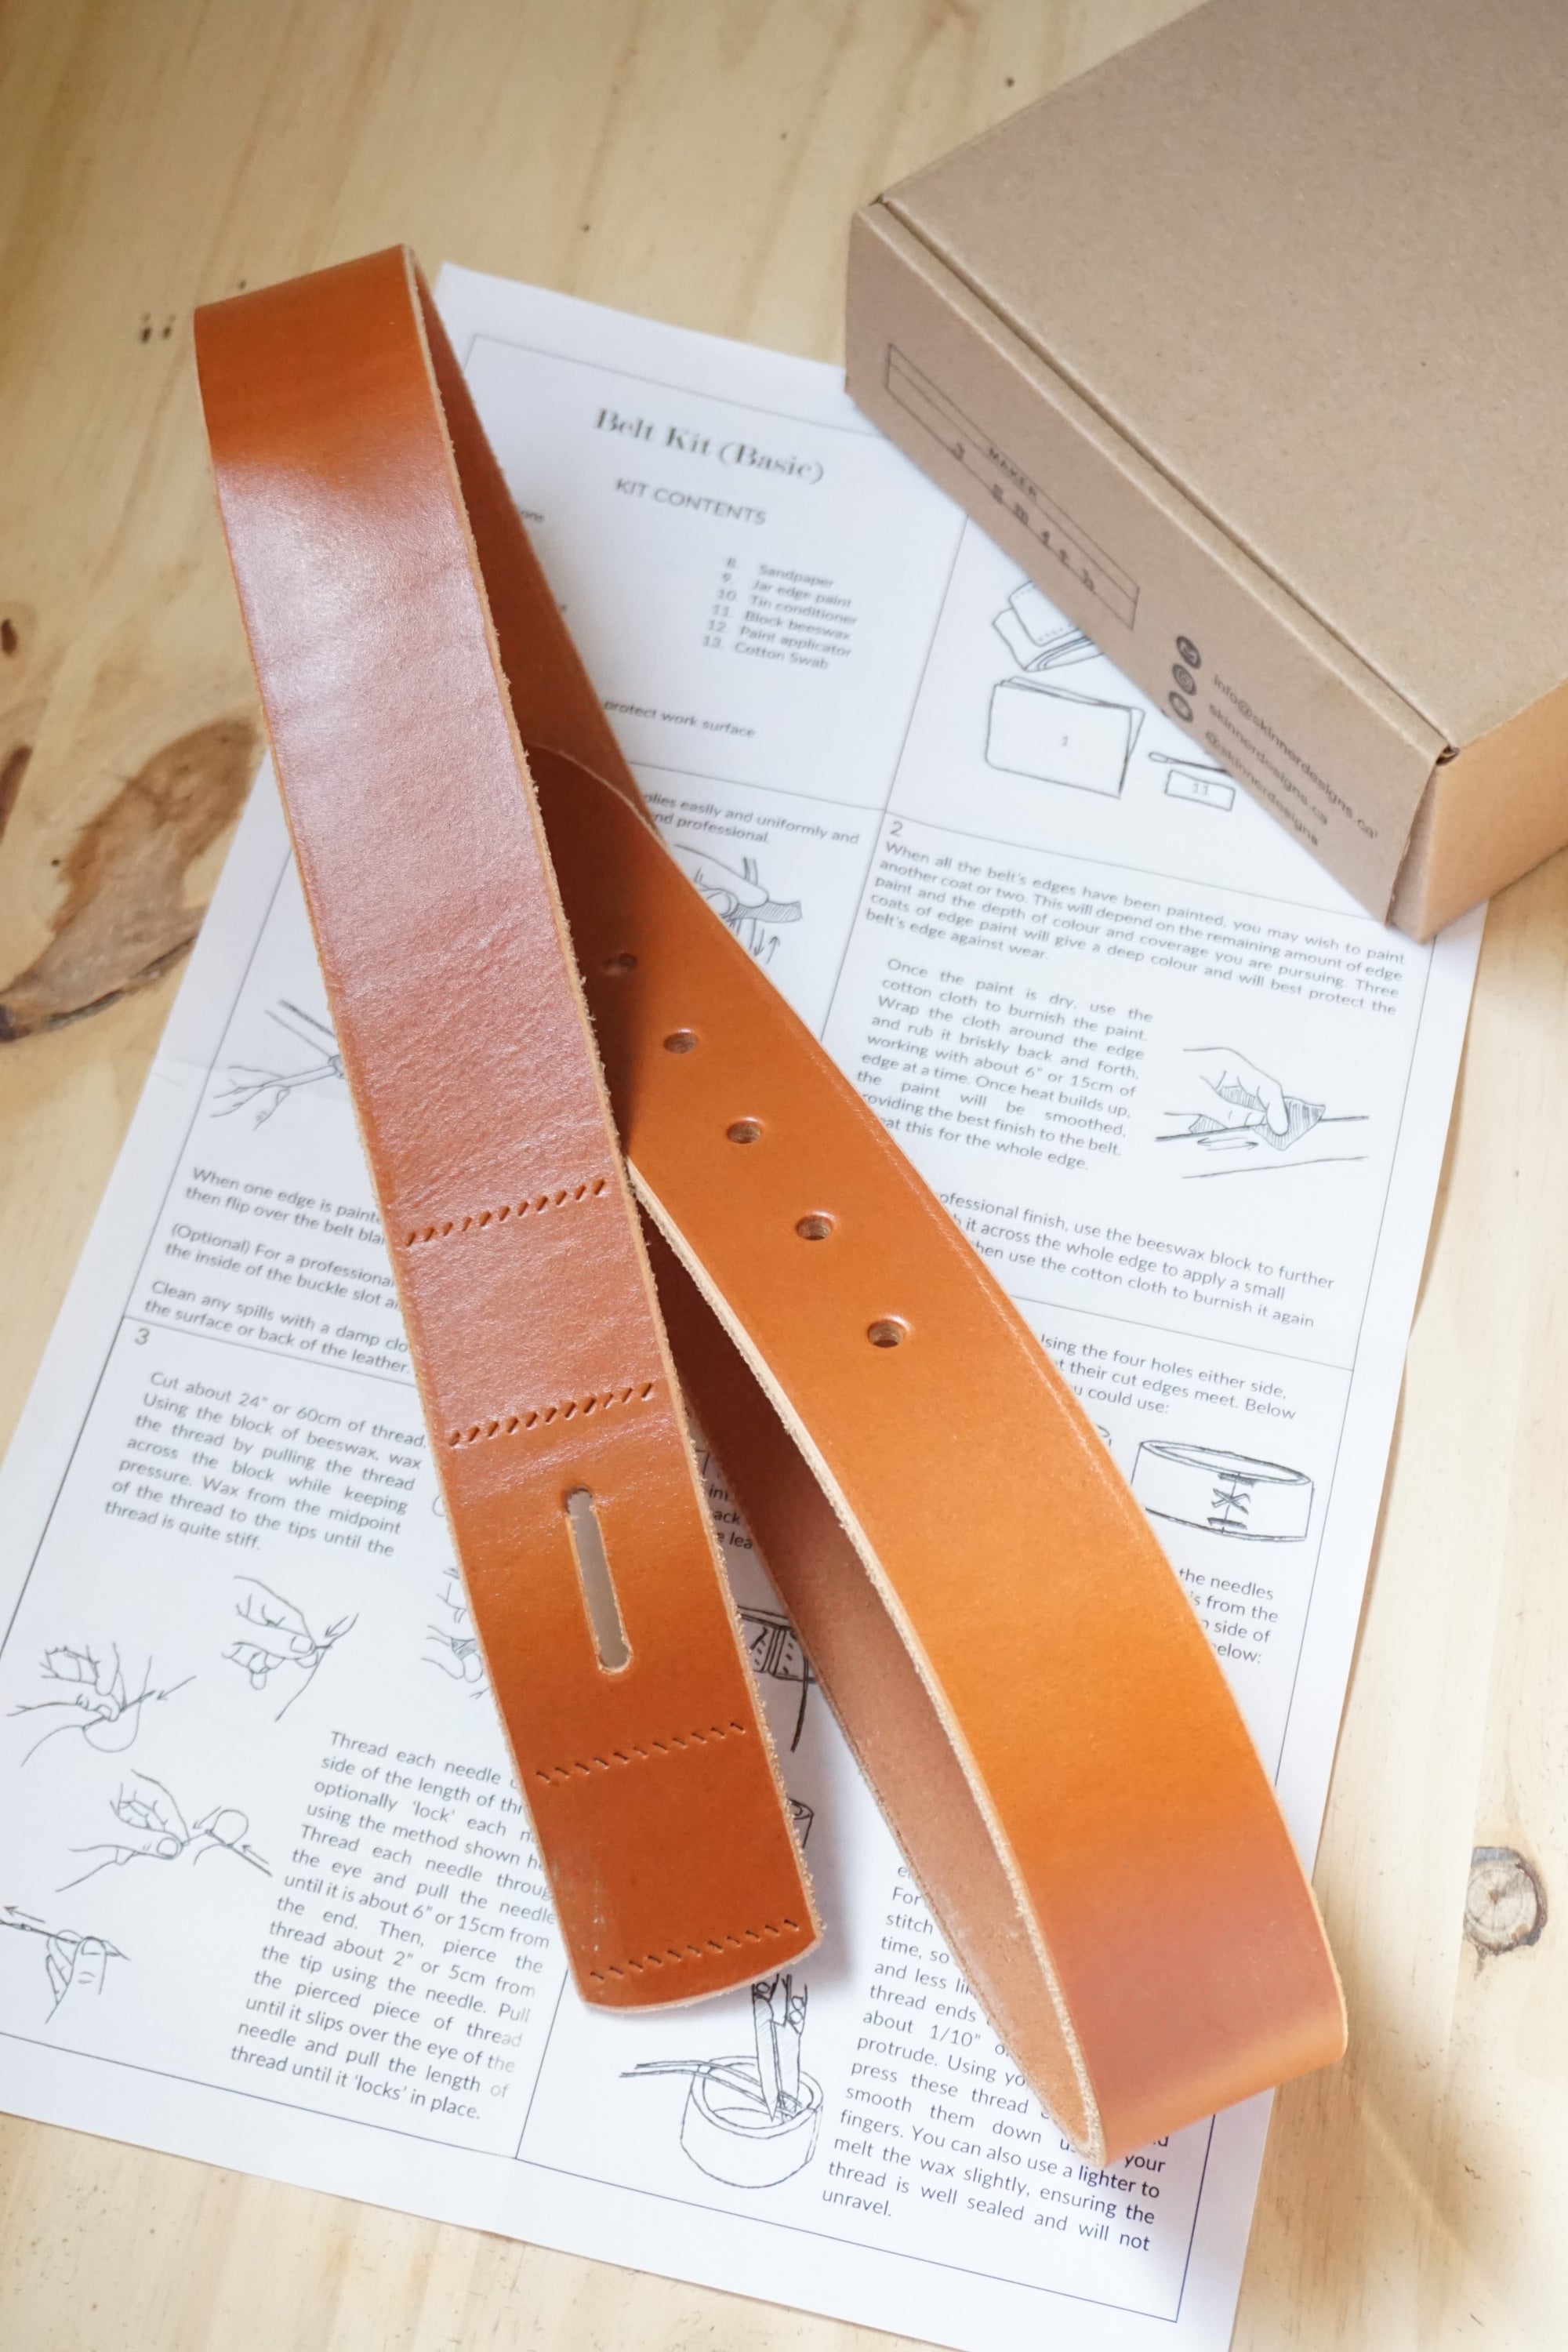 Leather belt sets — Krislyn's Leather Crafts